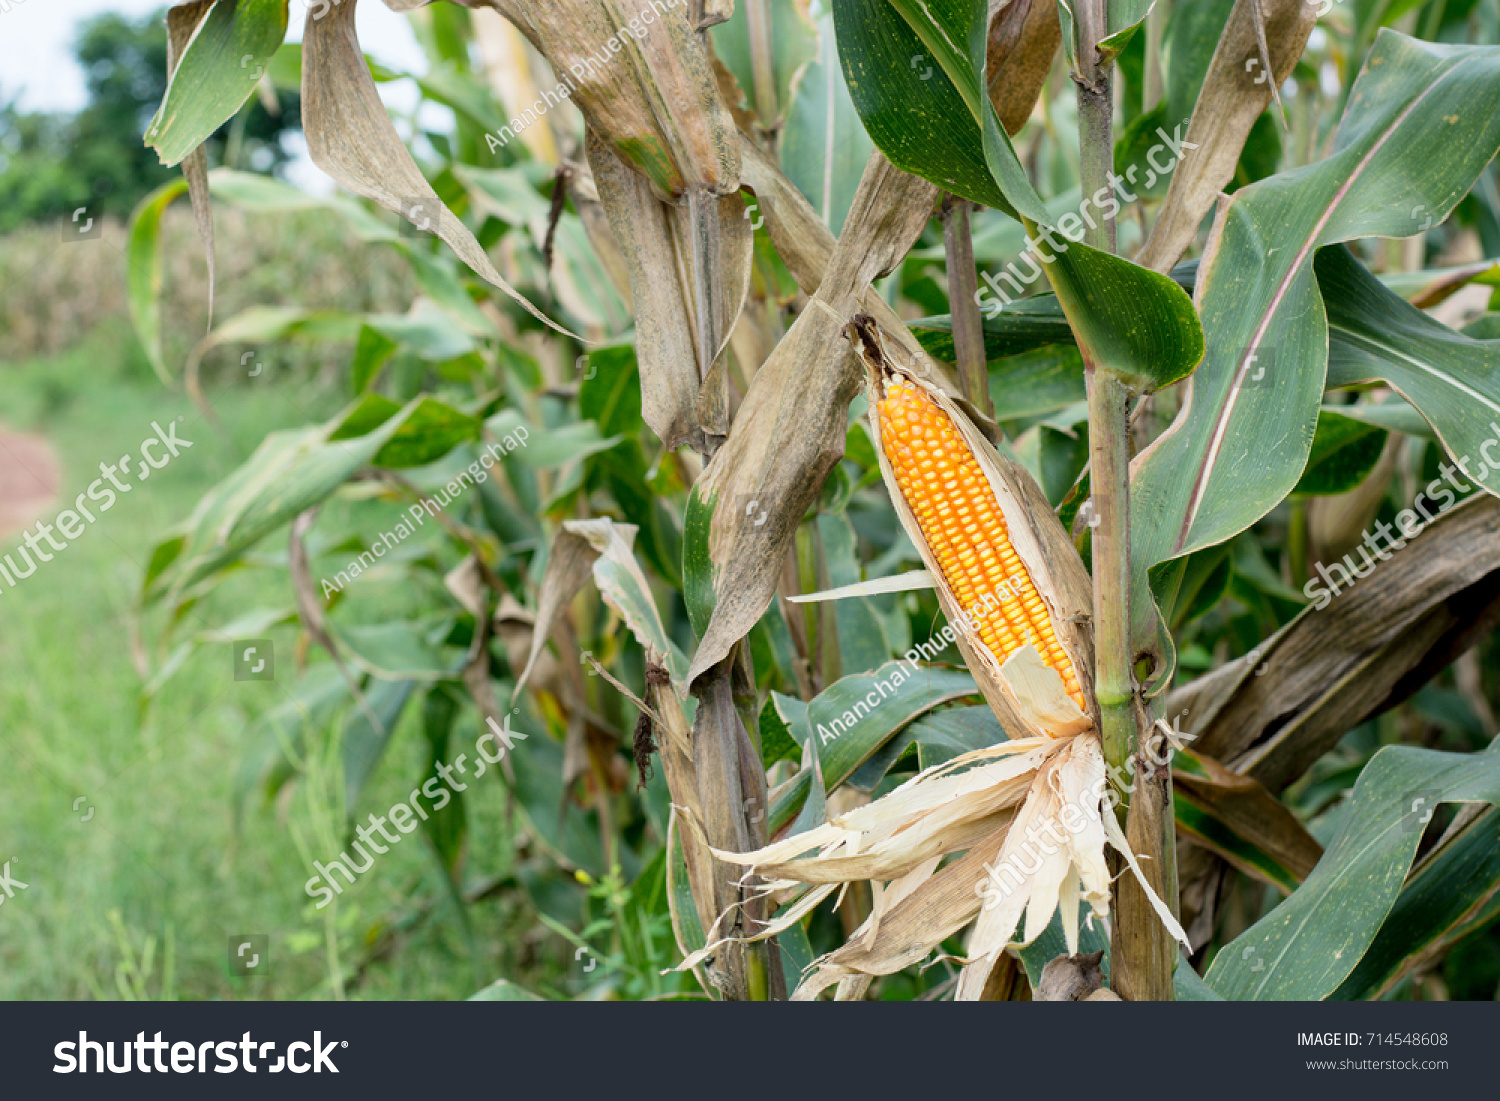 Corn farm #714548608